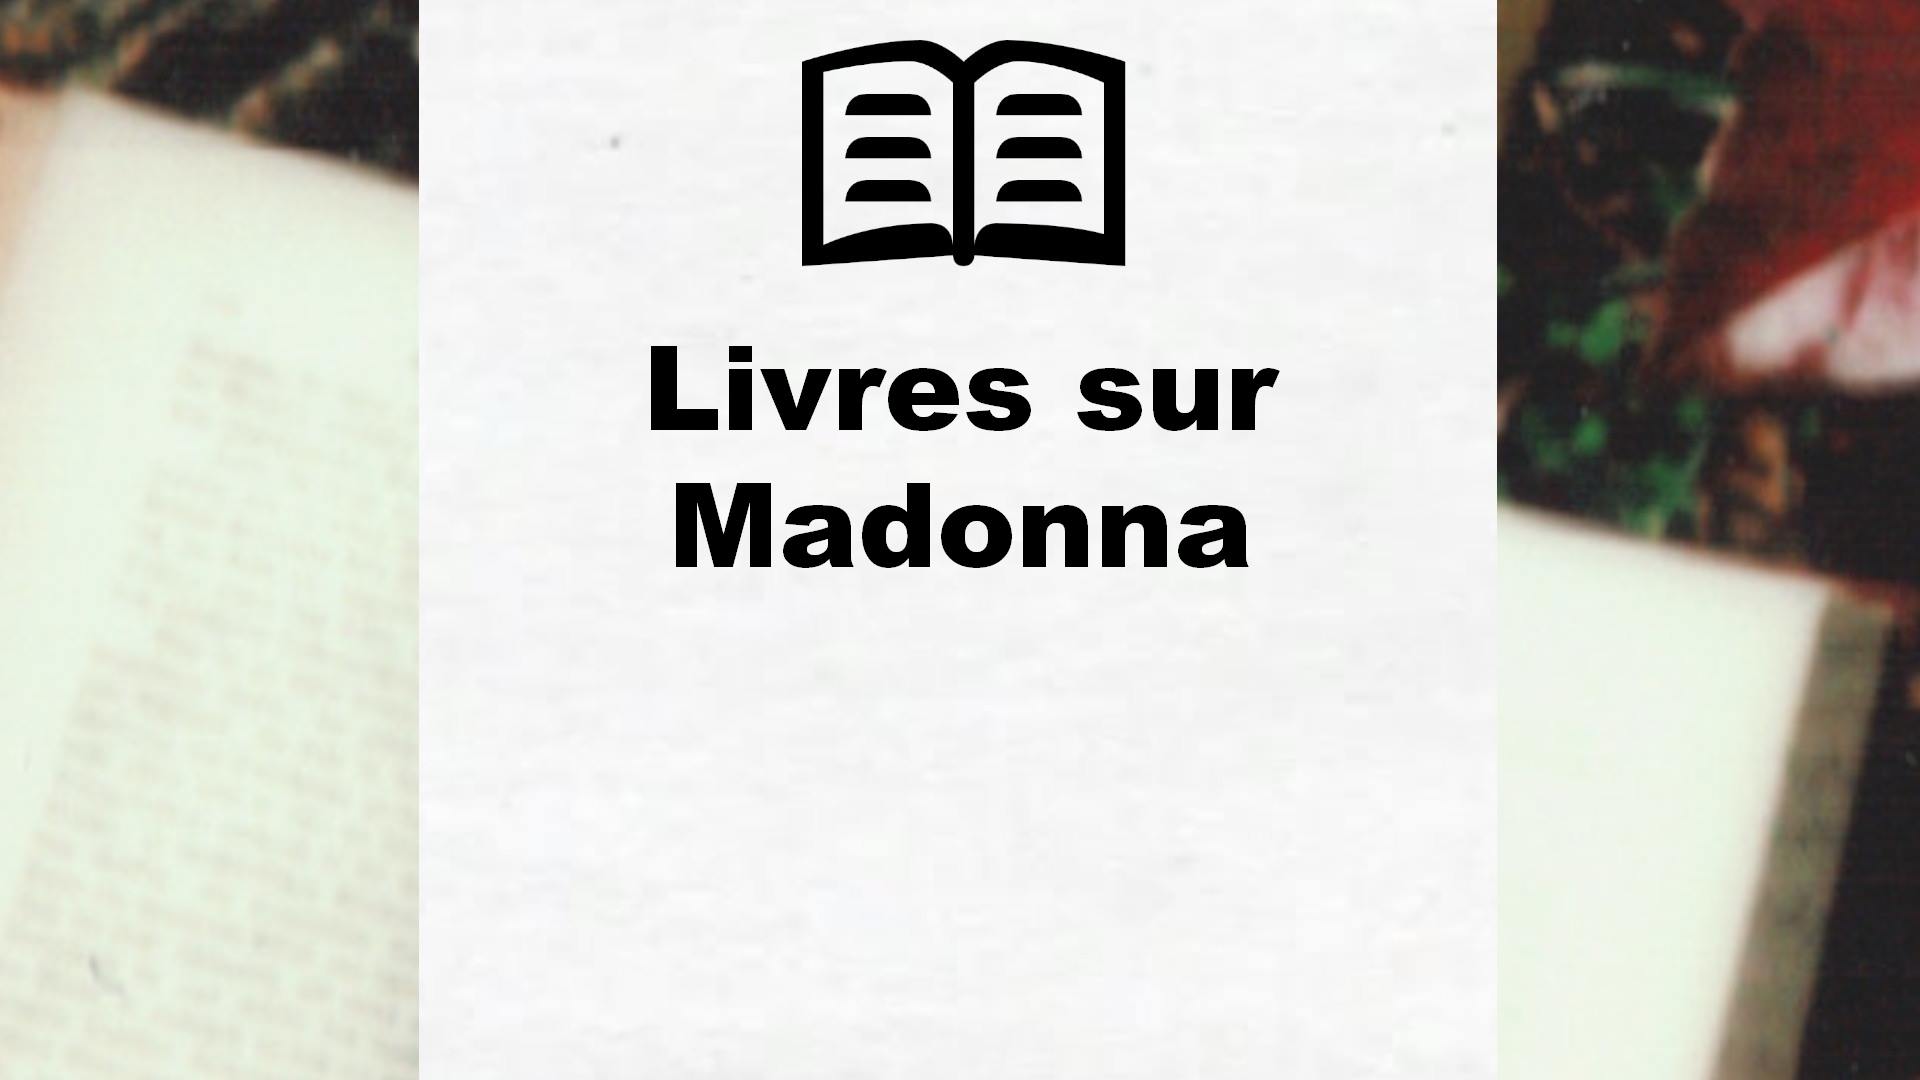 Livres sur Madonna